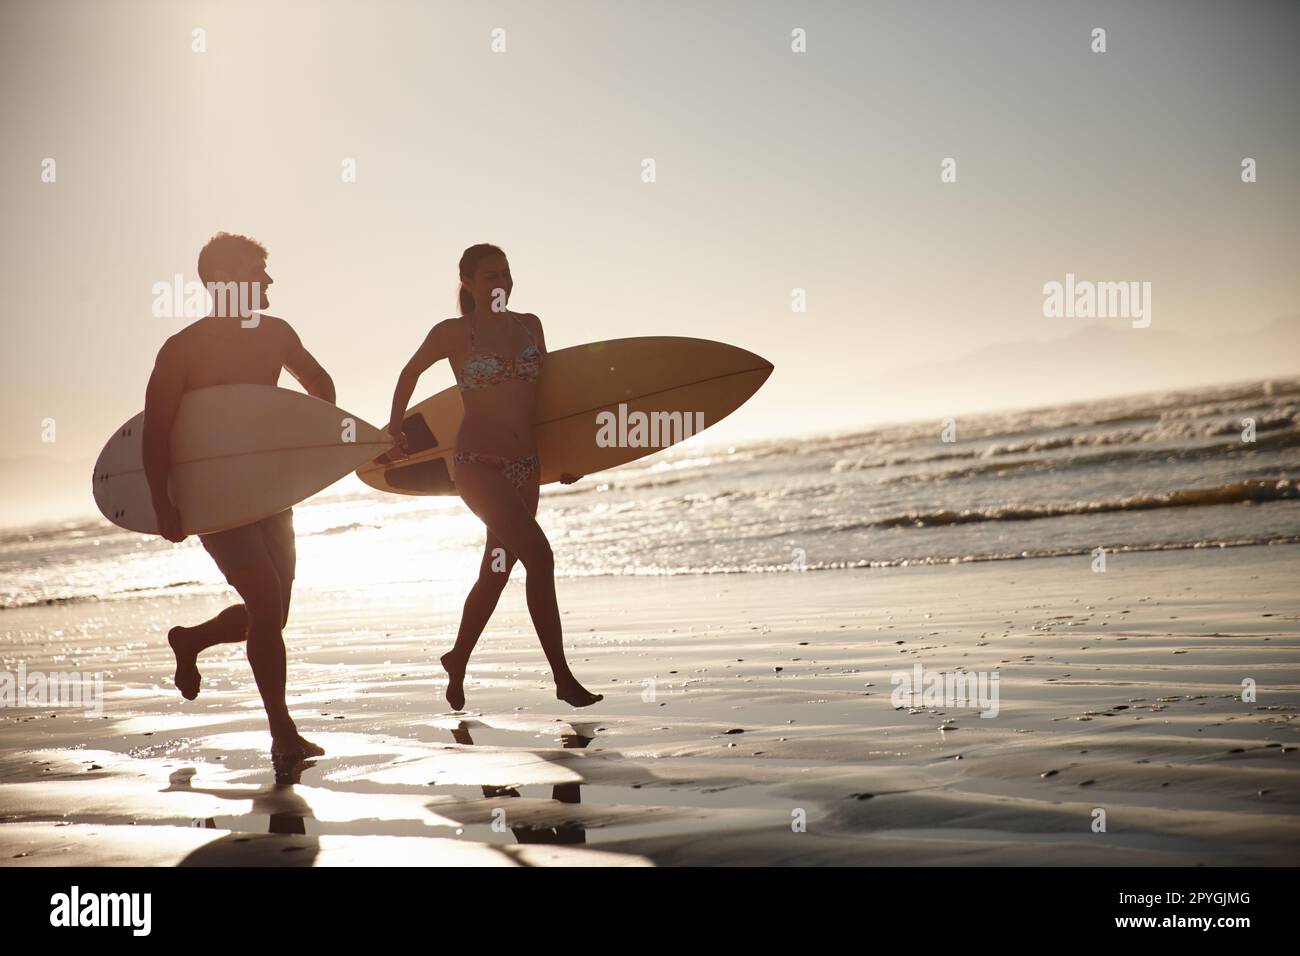 Liebe und Vitalität. Ein Paar mit Silhouetten, das mit seinen Surfbrettern am Ufer entlang läuft. Stockfoto